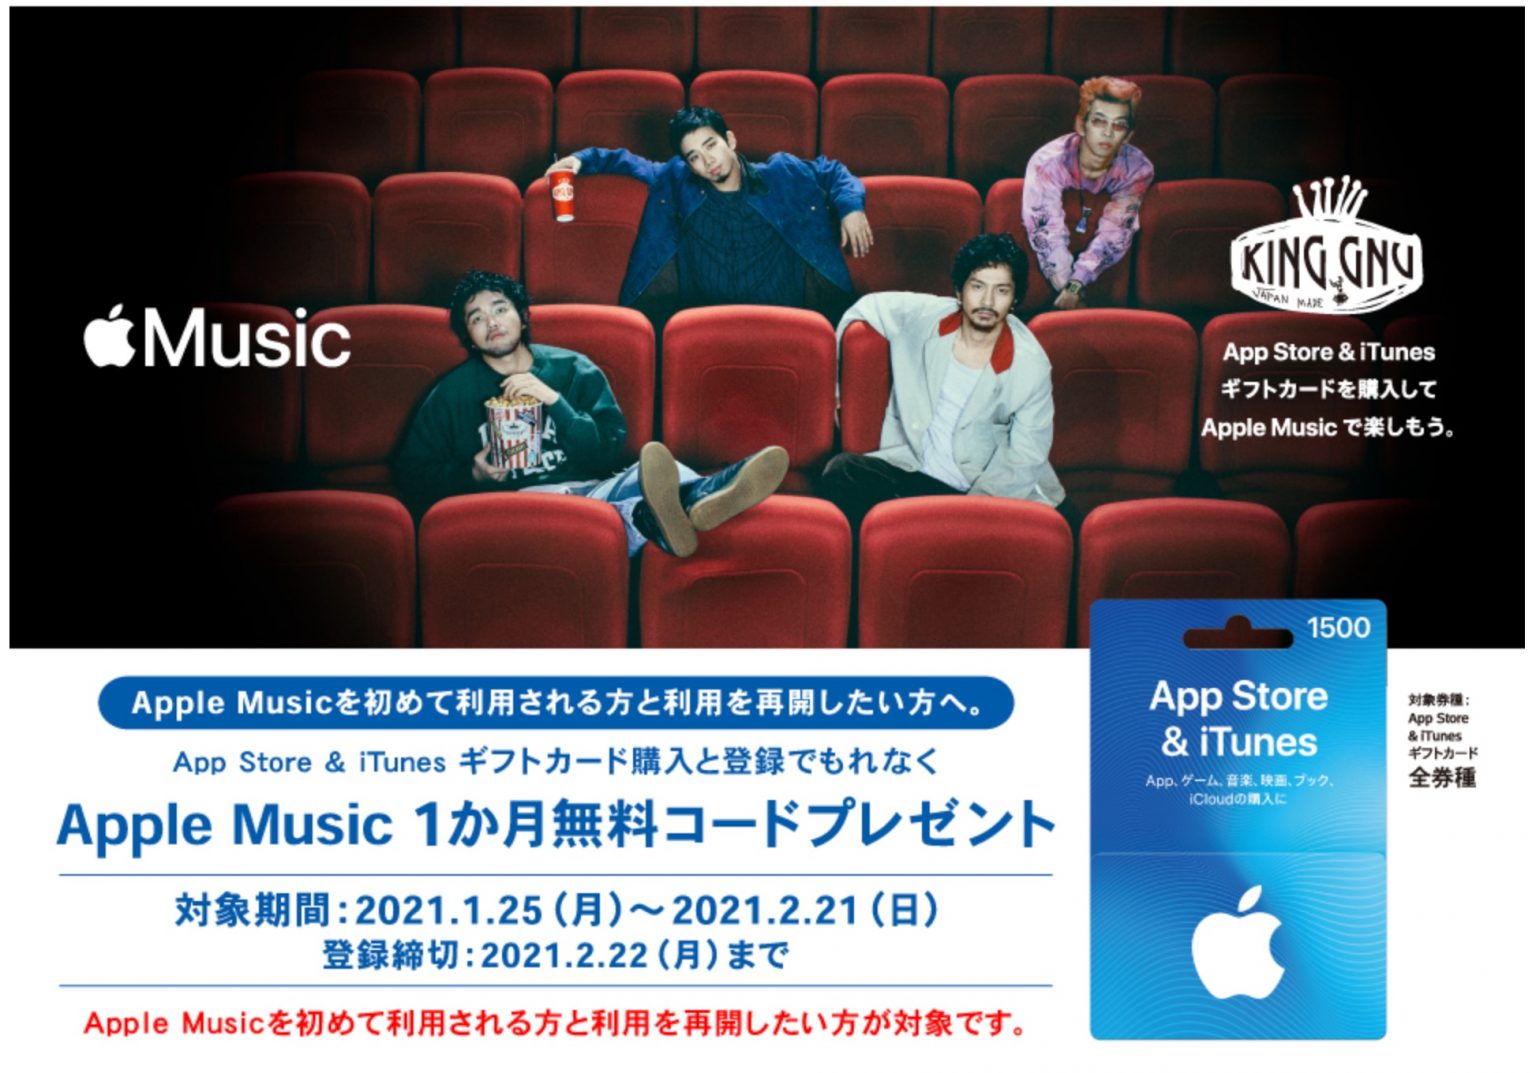 大手コンビニ Itunesカード購入者にapple Music1カ月無料コード配布中 Iphone Mania